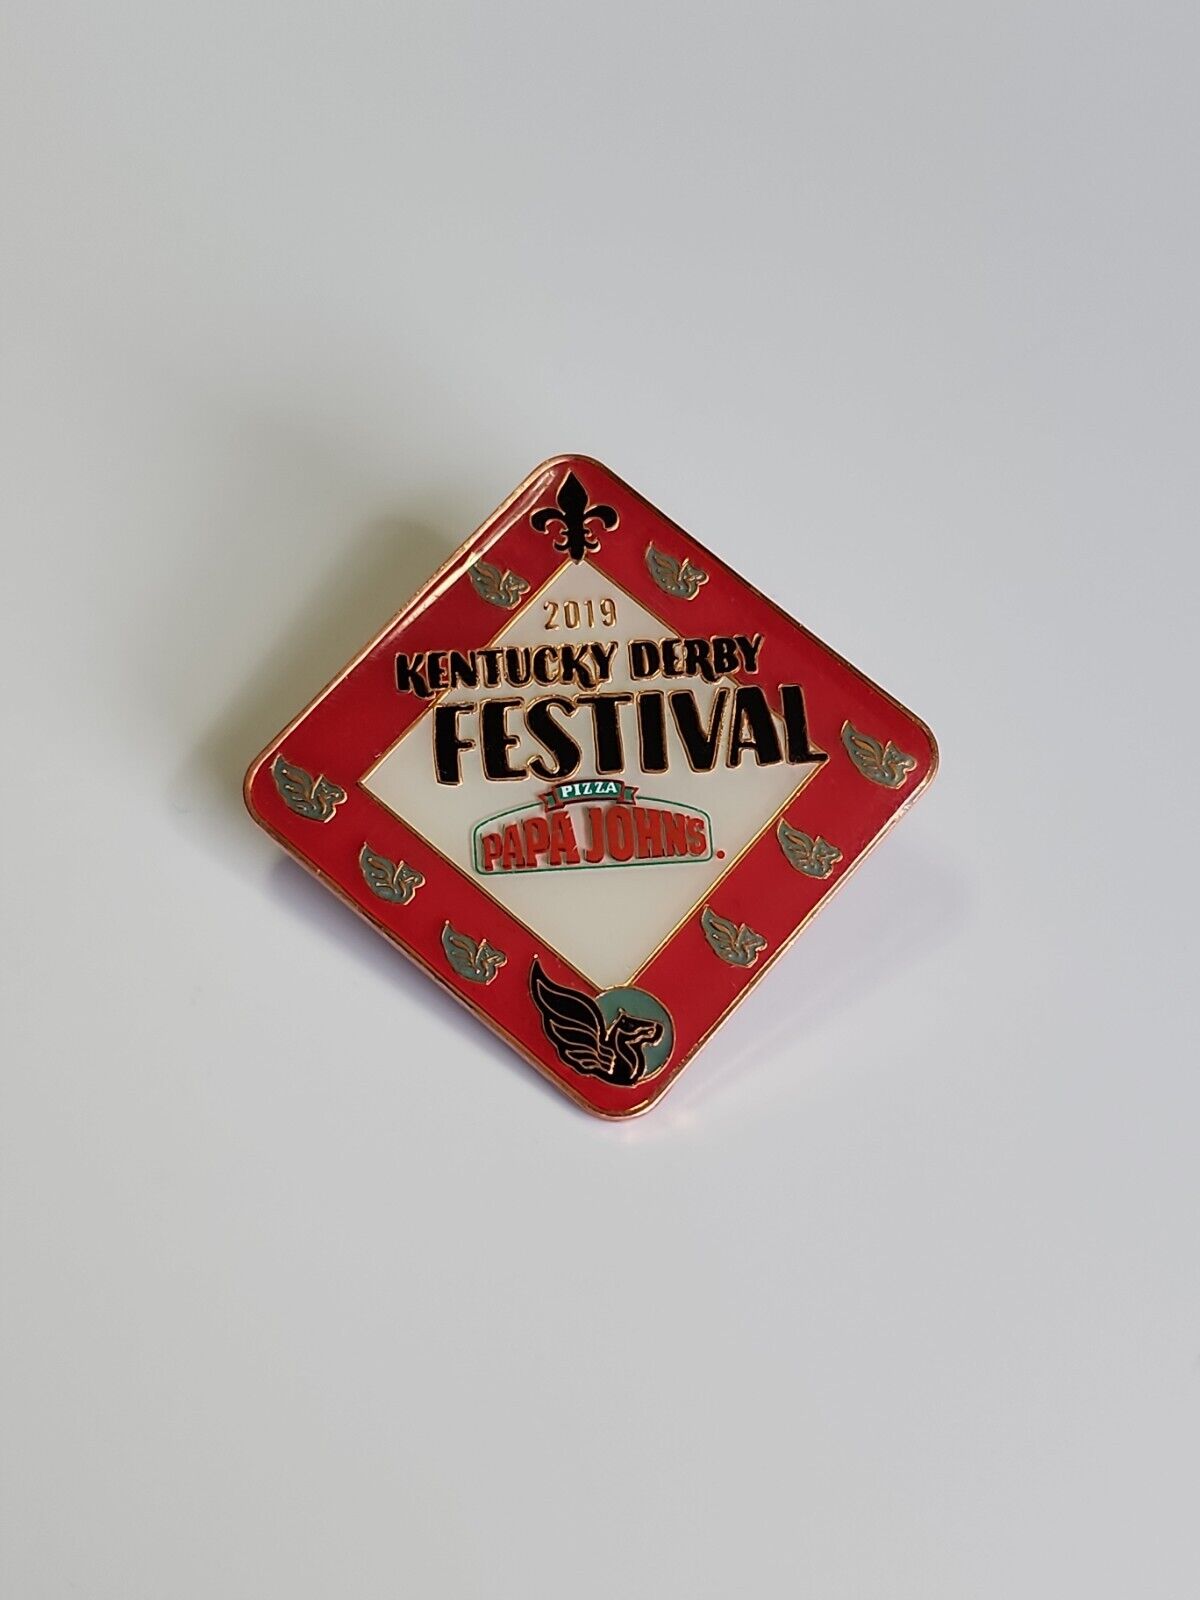 2019 Kentucky Derby Festival Souvenir Pin 145th Papa John's Pizza